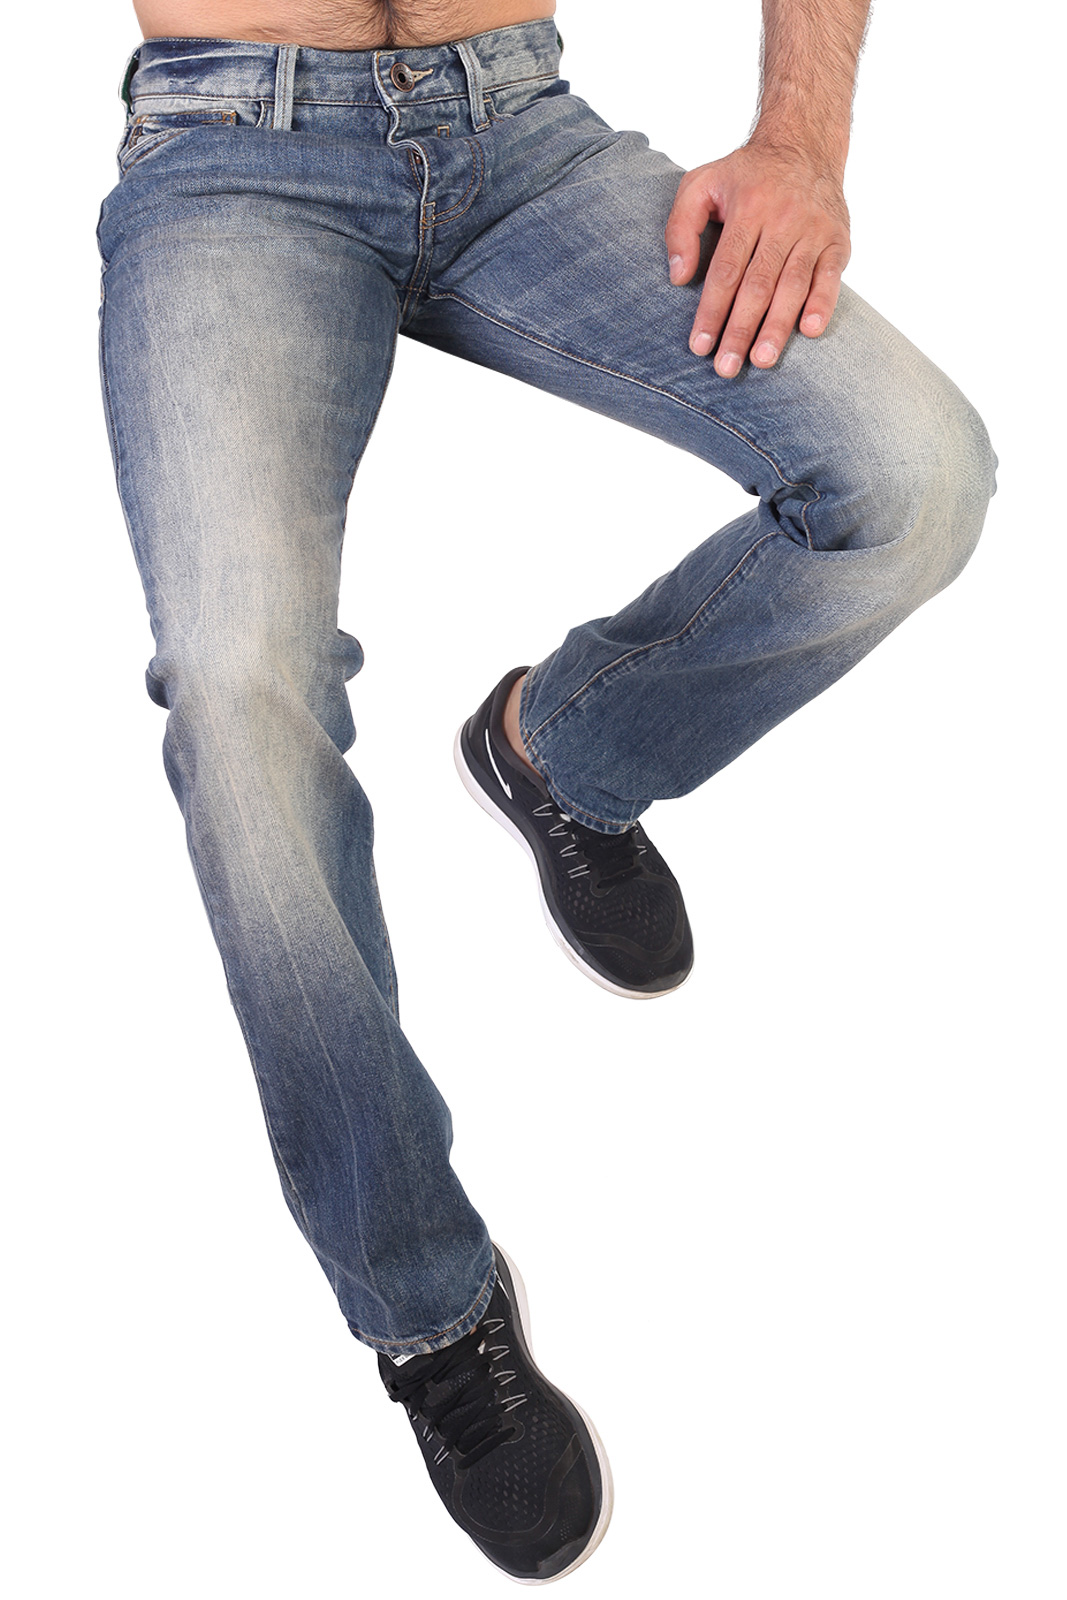 Продажа фирменных мужских джинс оптом и в розницу